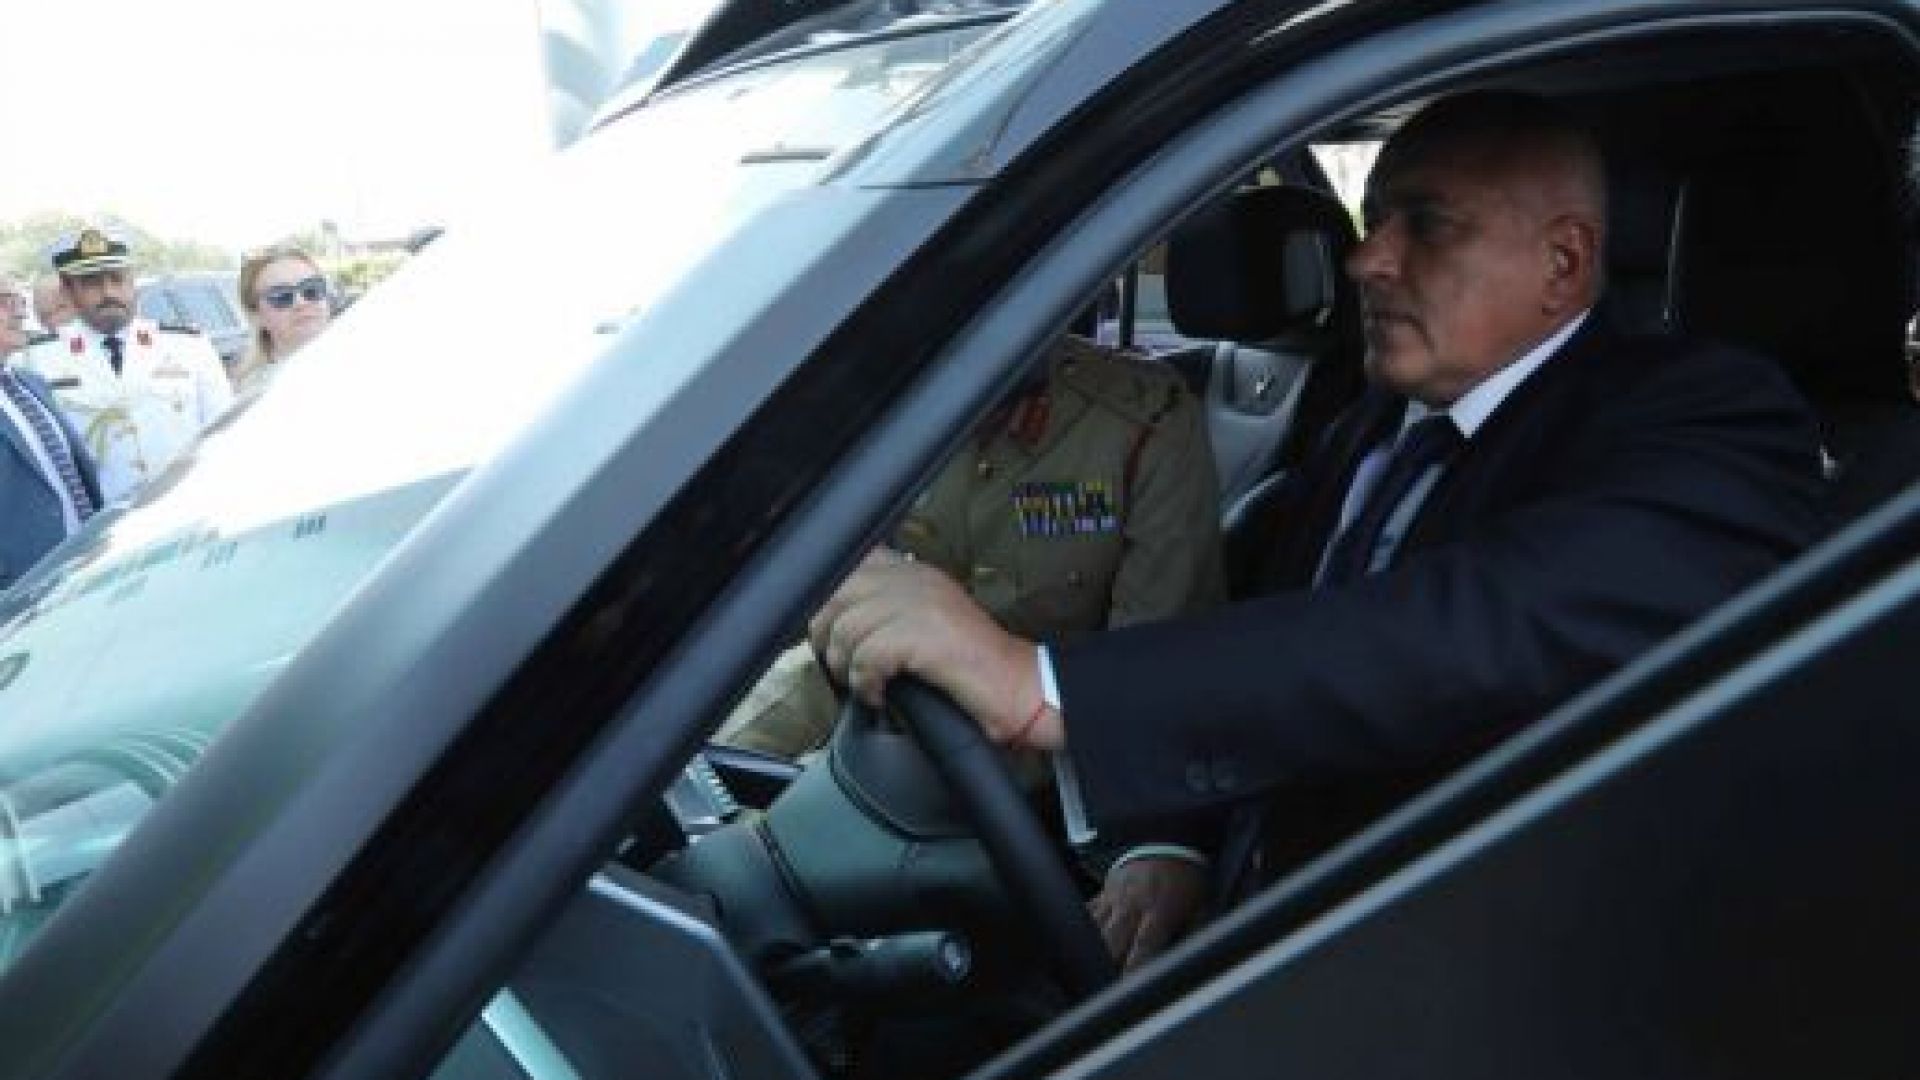 Министър председателят Бойко Борисов е на официално посещение в Обединените арабски